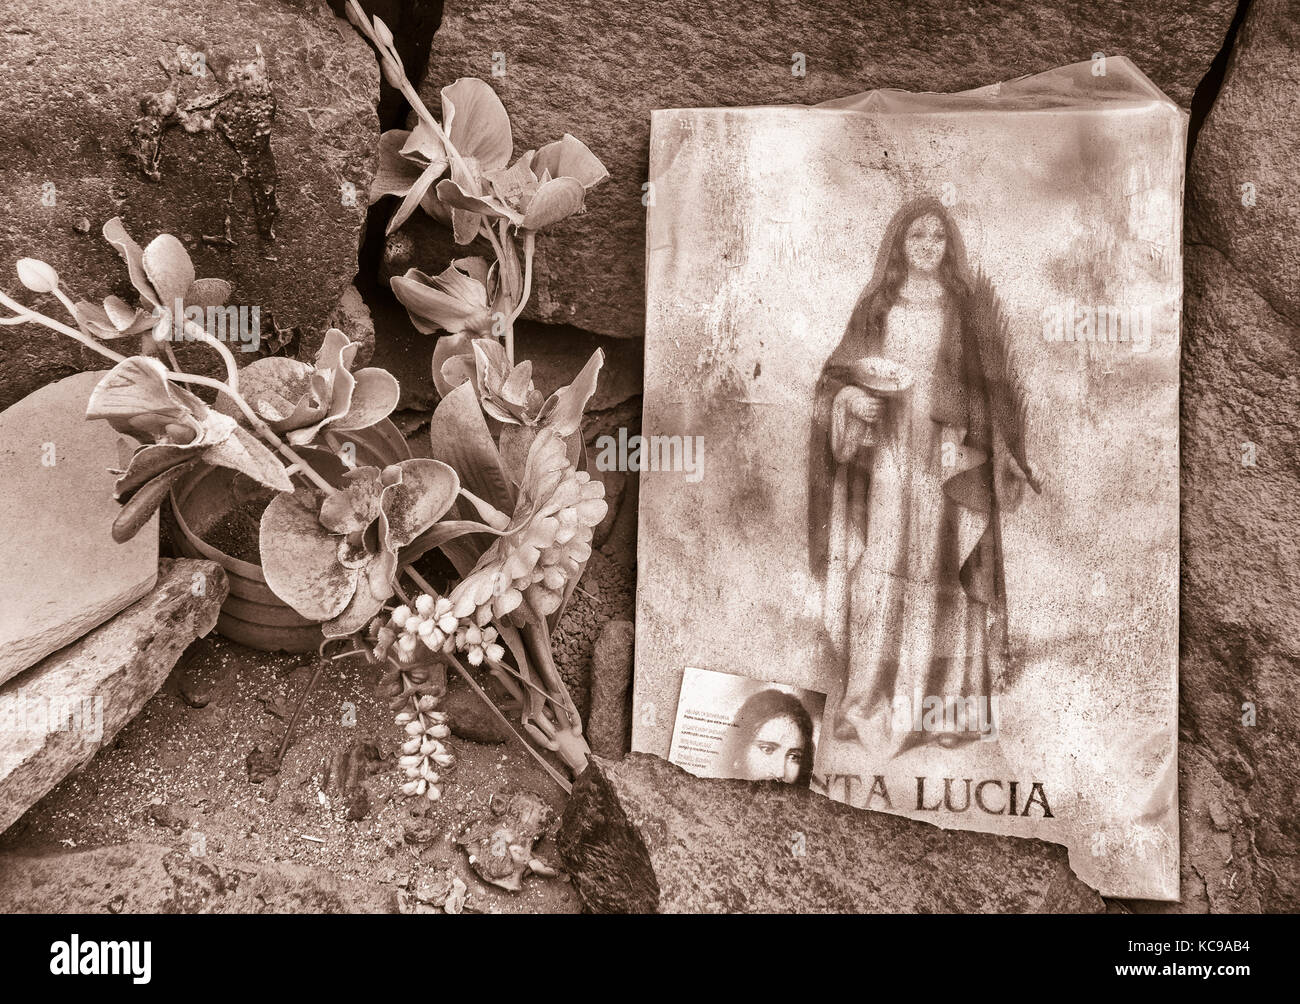 Immagine di santa lucia, patrono dei non vedenti come pure gli autori, contadini..., sulla spiaggia in Spagna Foto Stock